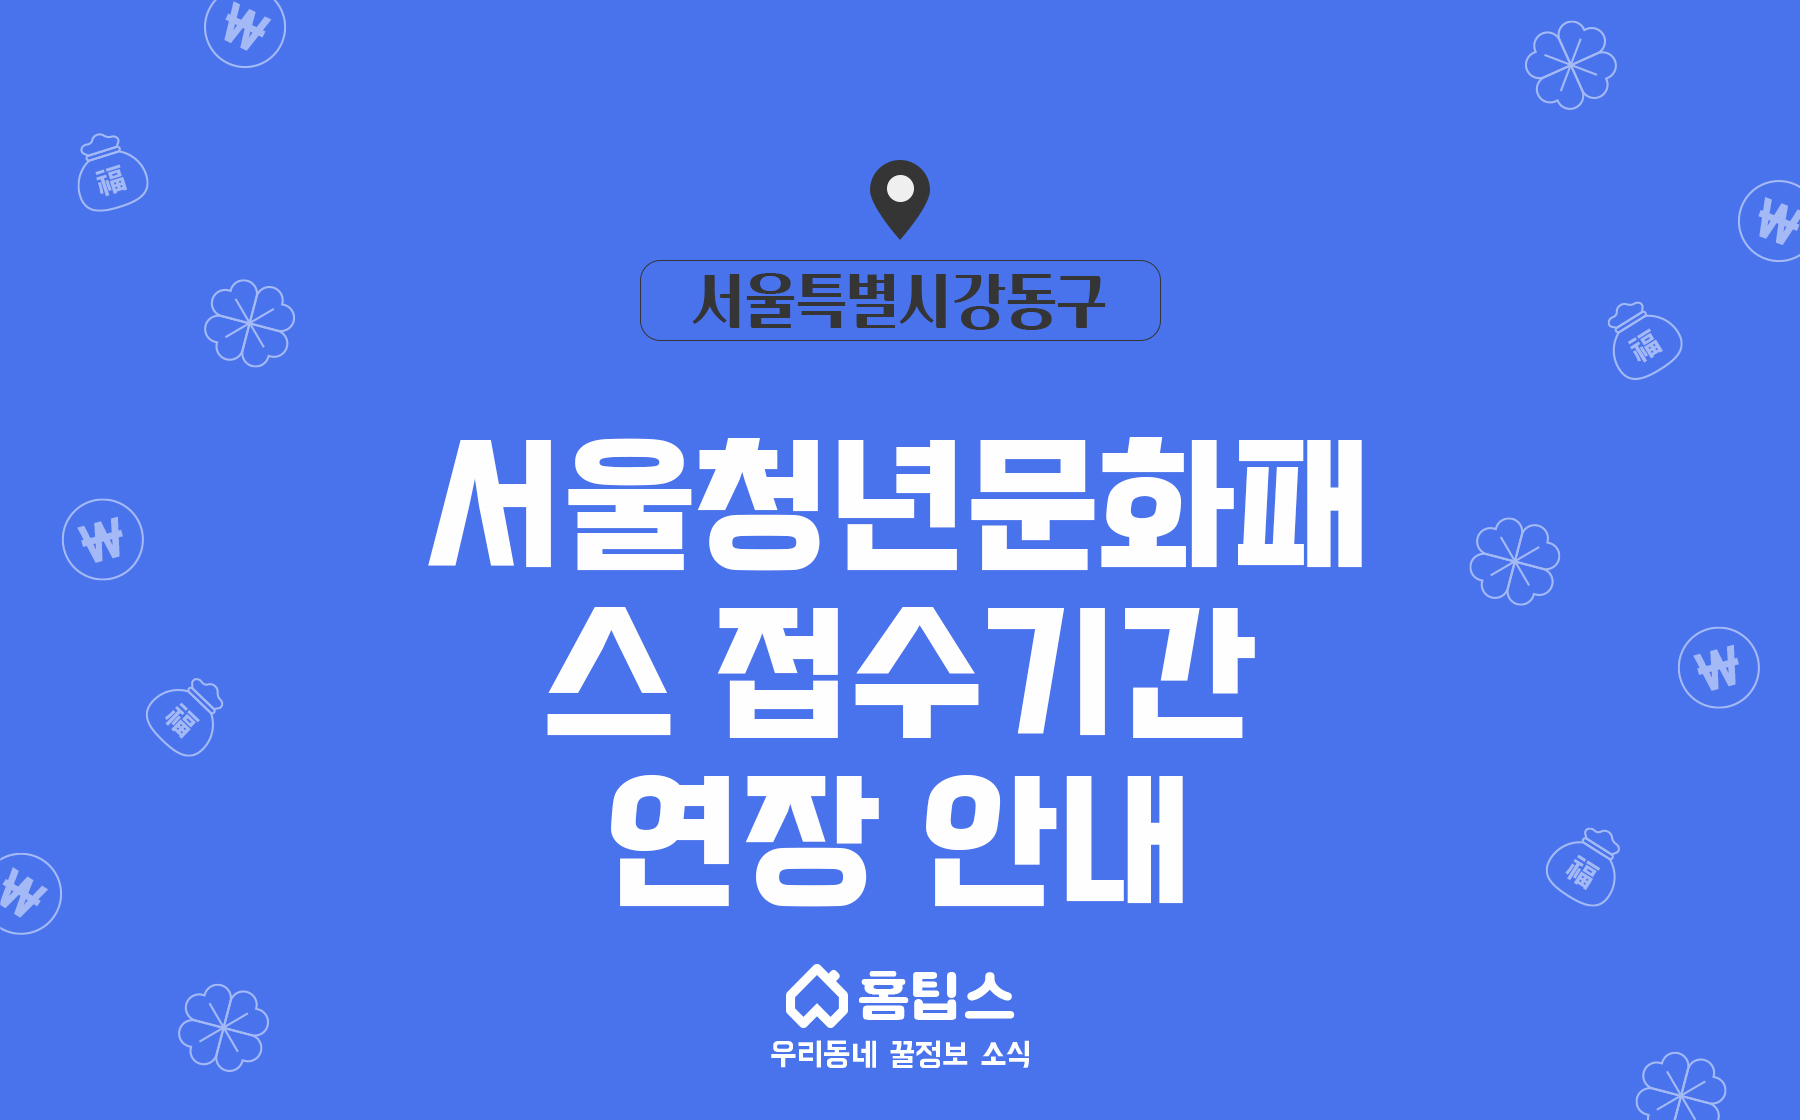 서울청년문화패스 접수기간 연장 안내